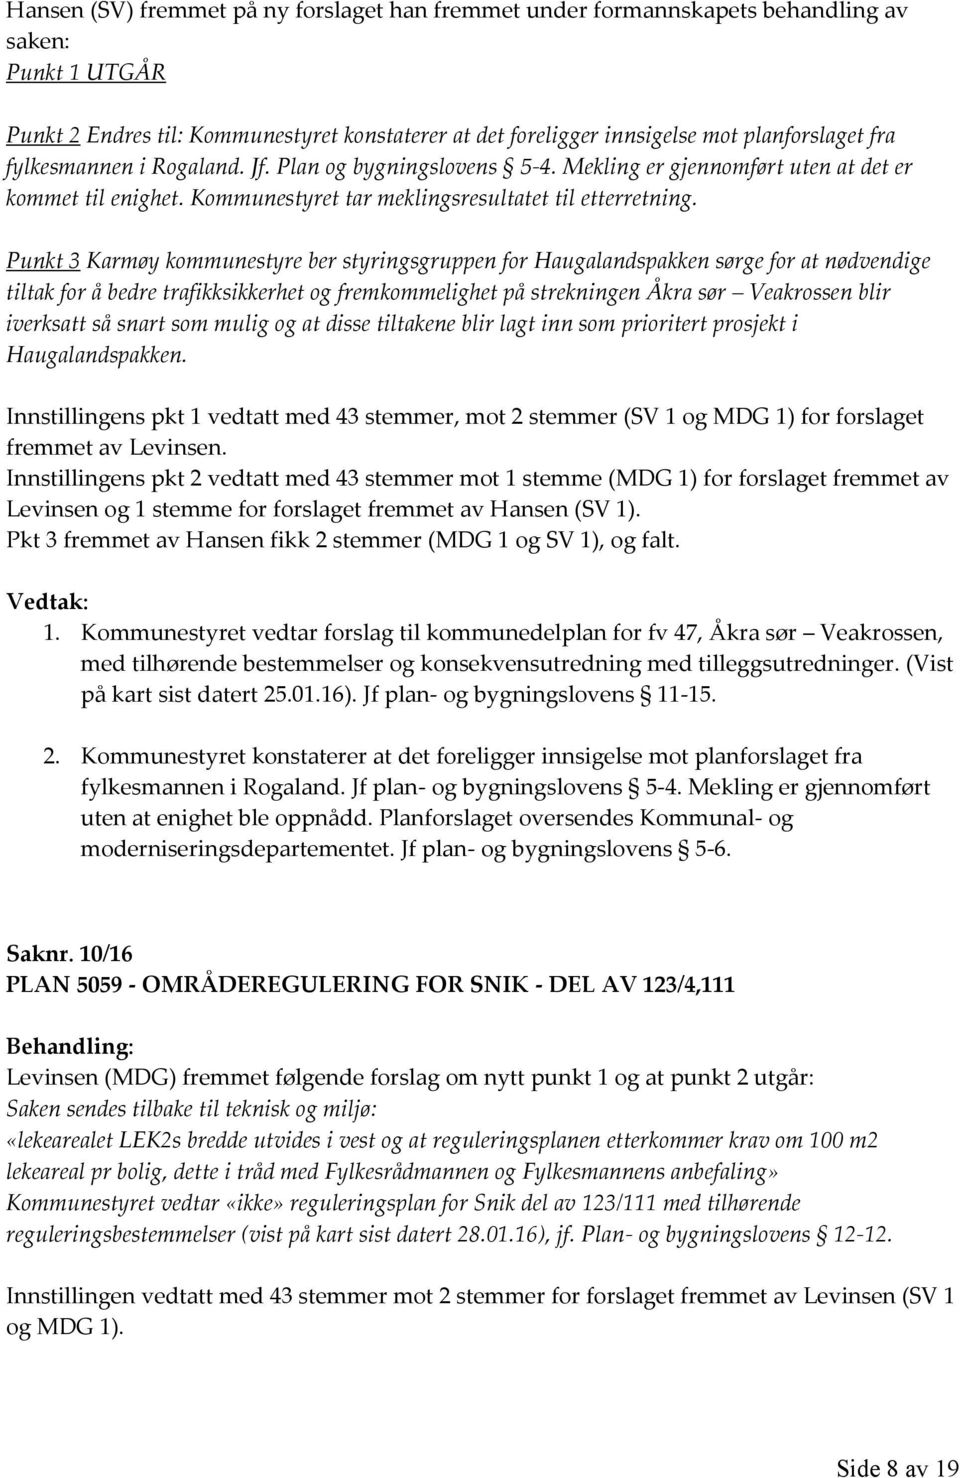 Punkt 3 Karmøy kommunestyre ber styringsgruppen for Haugalandspakken sørge for at nødvendige tiltak for å bedre trafikksikkerhet og fremkommelighet på strekningen Åkra sør Veakrossen blir iverksatt